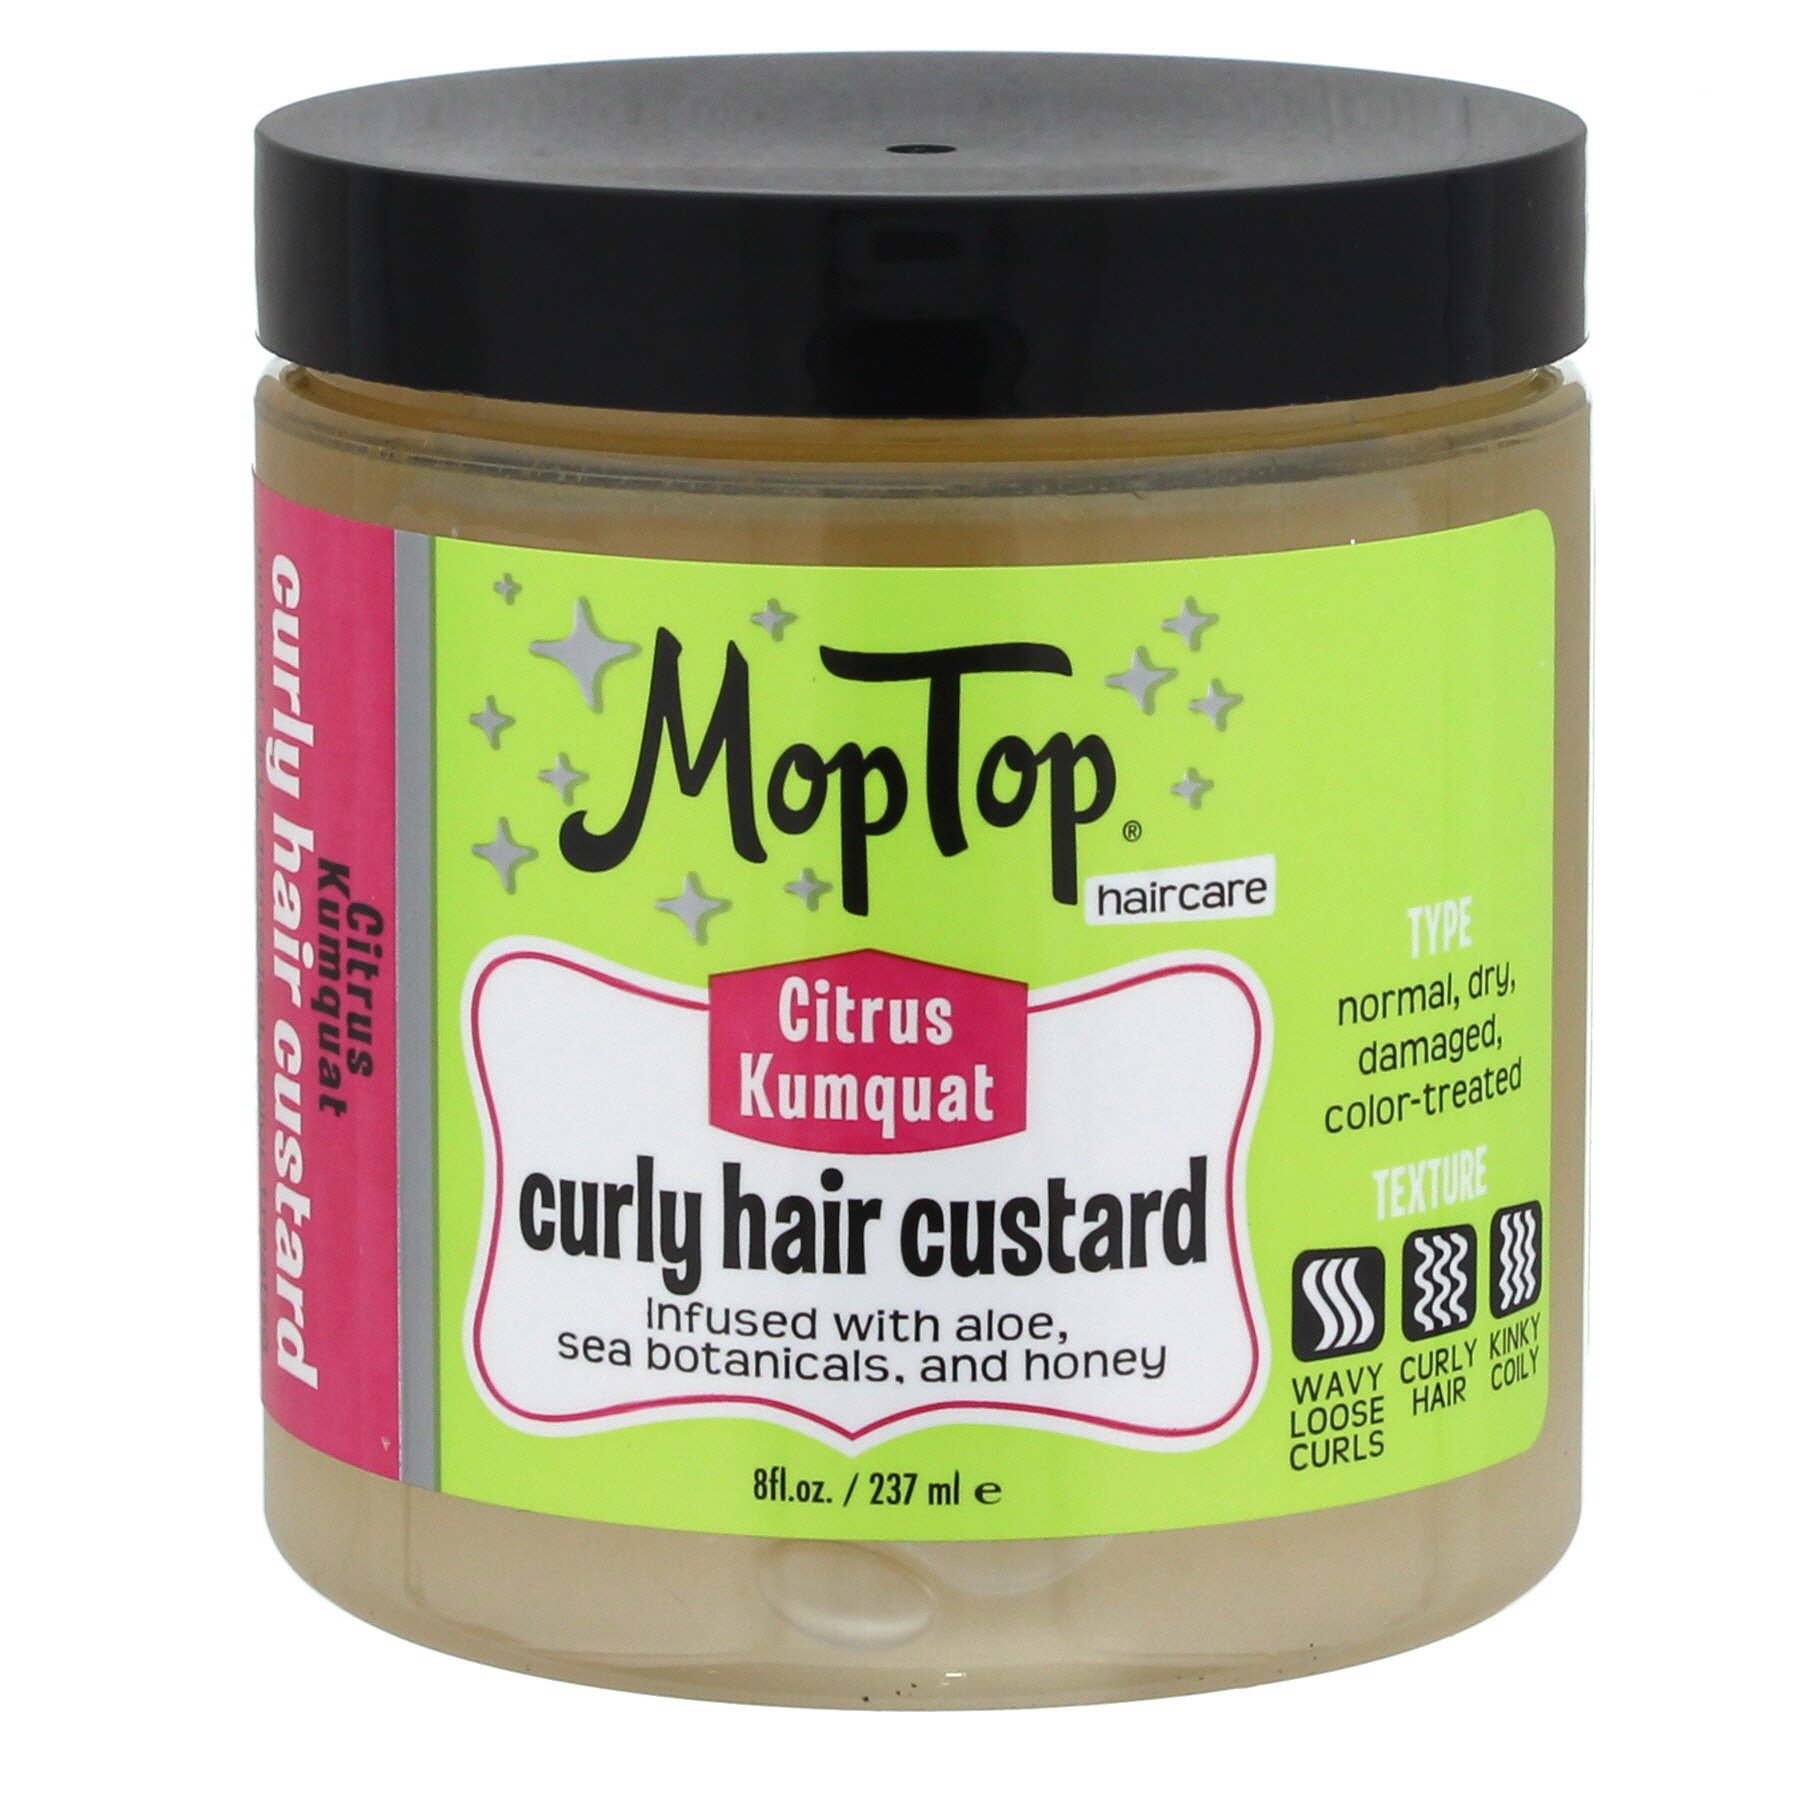 MopTop Curly Hair Custard - Shop Hair Care at H-E-B